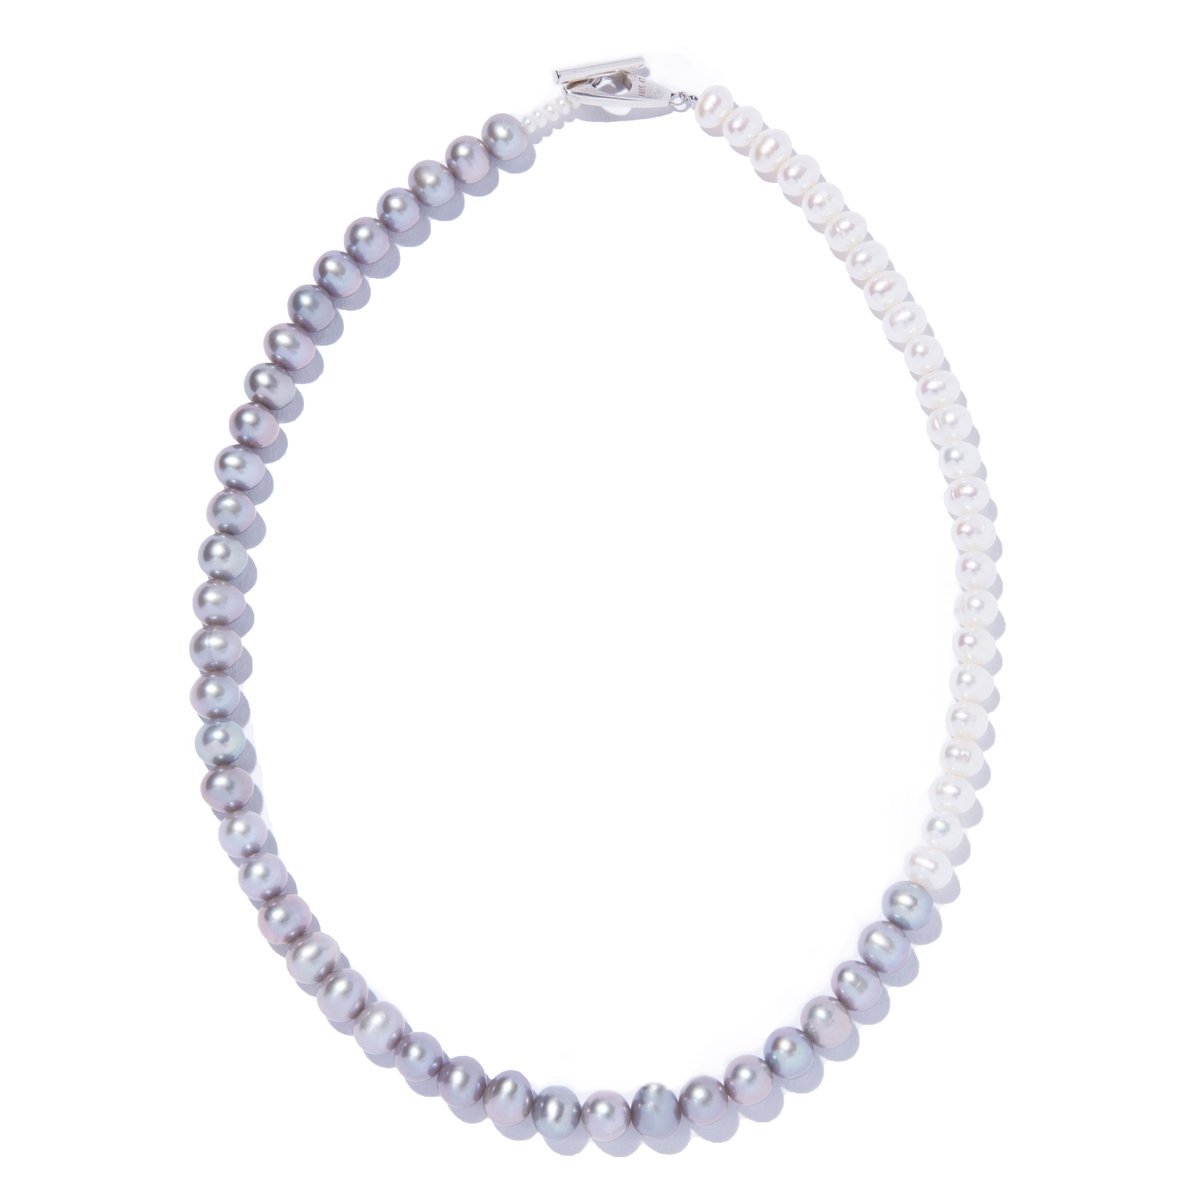 aura double necklace | IRIS47 official online s...